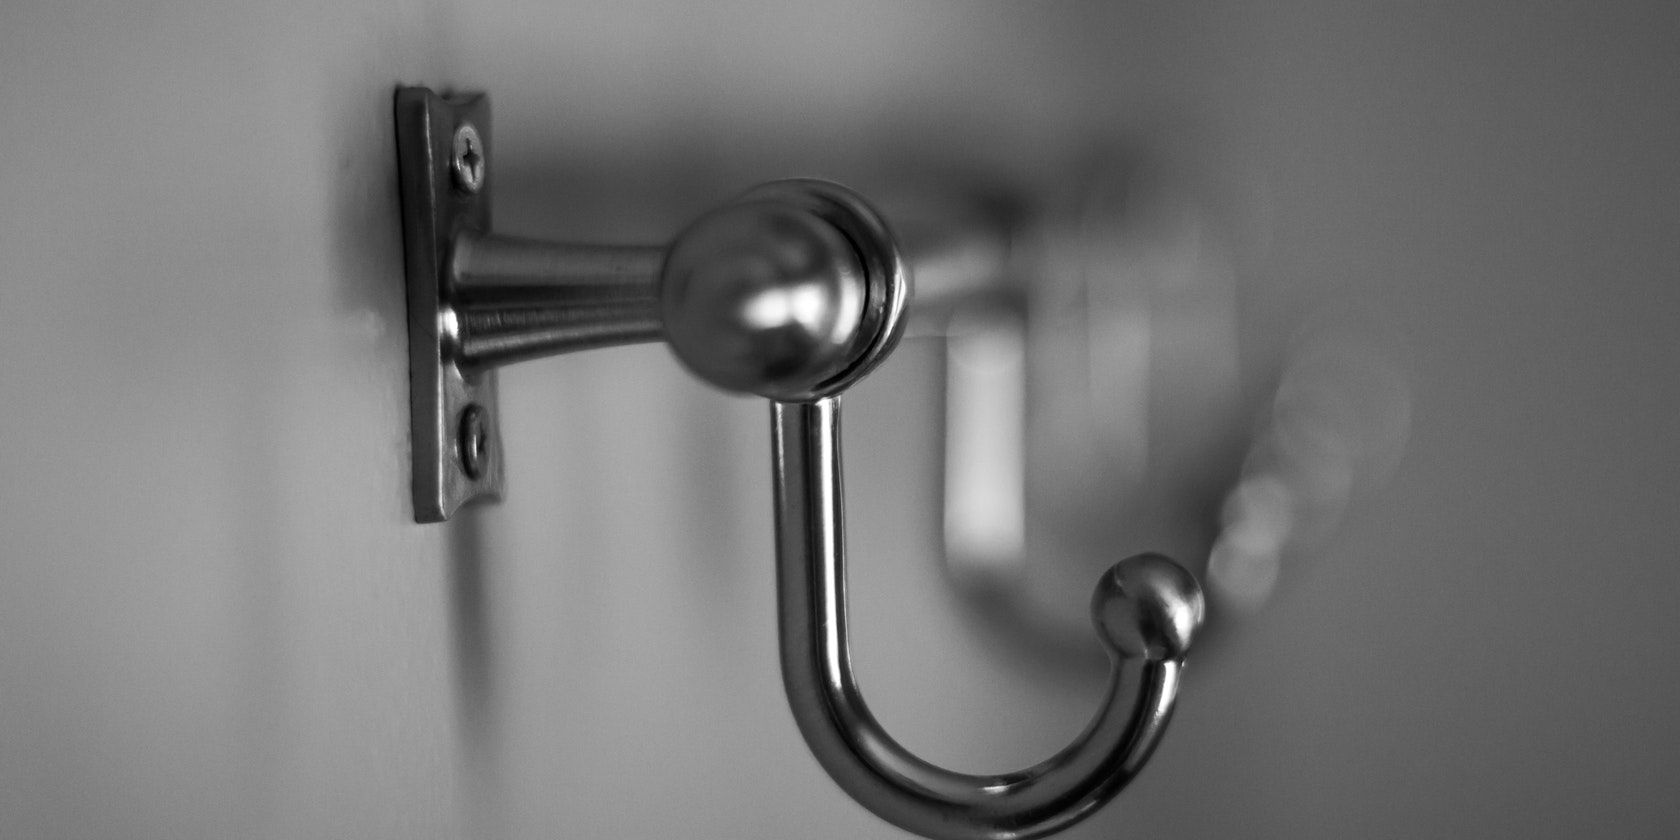 A focused stainless steel hook